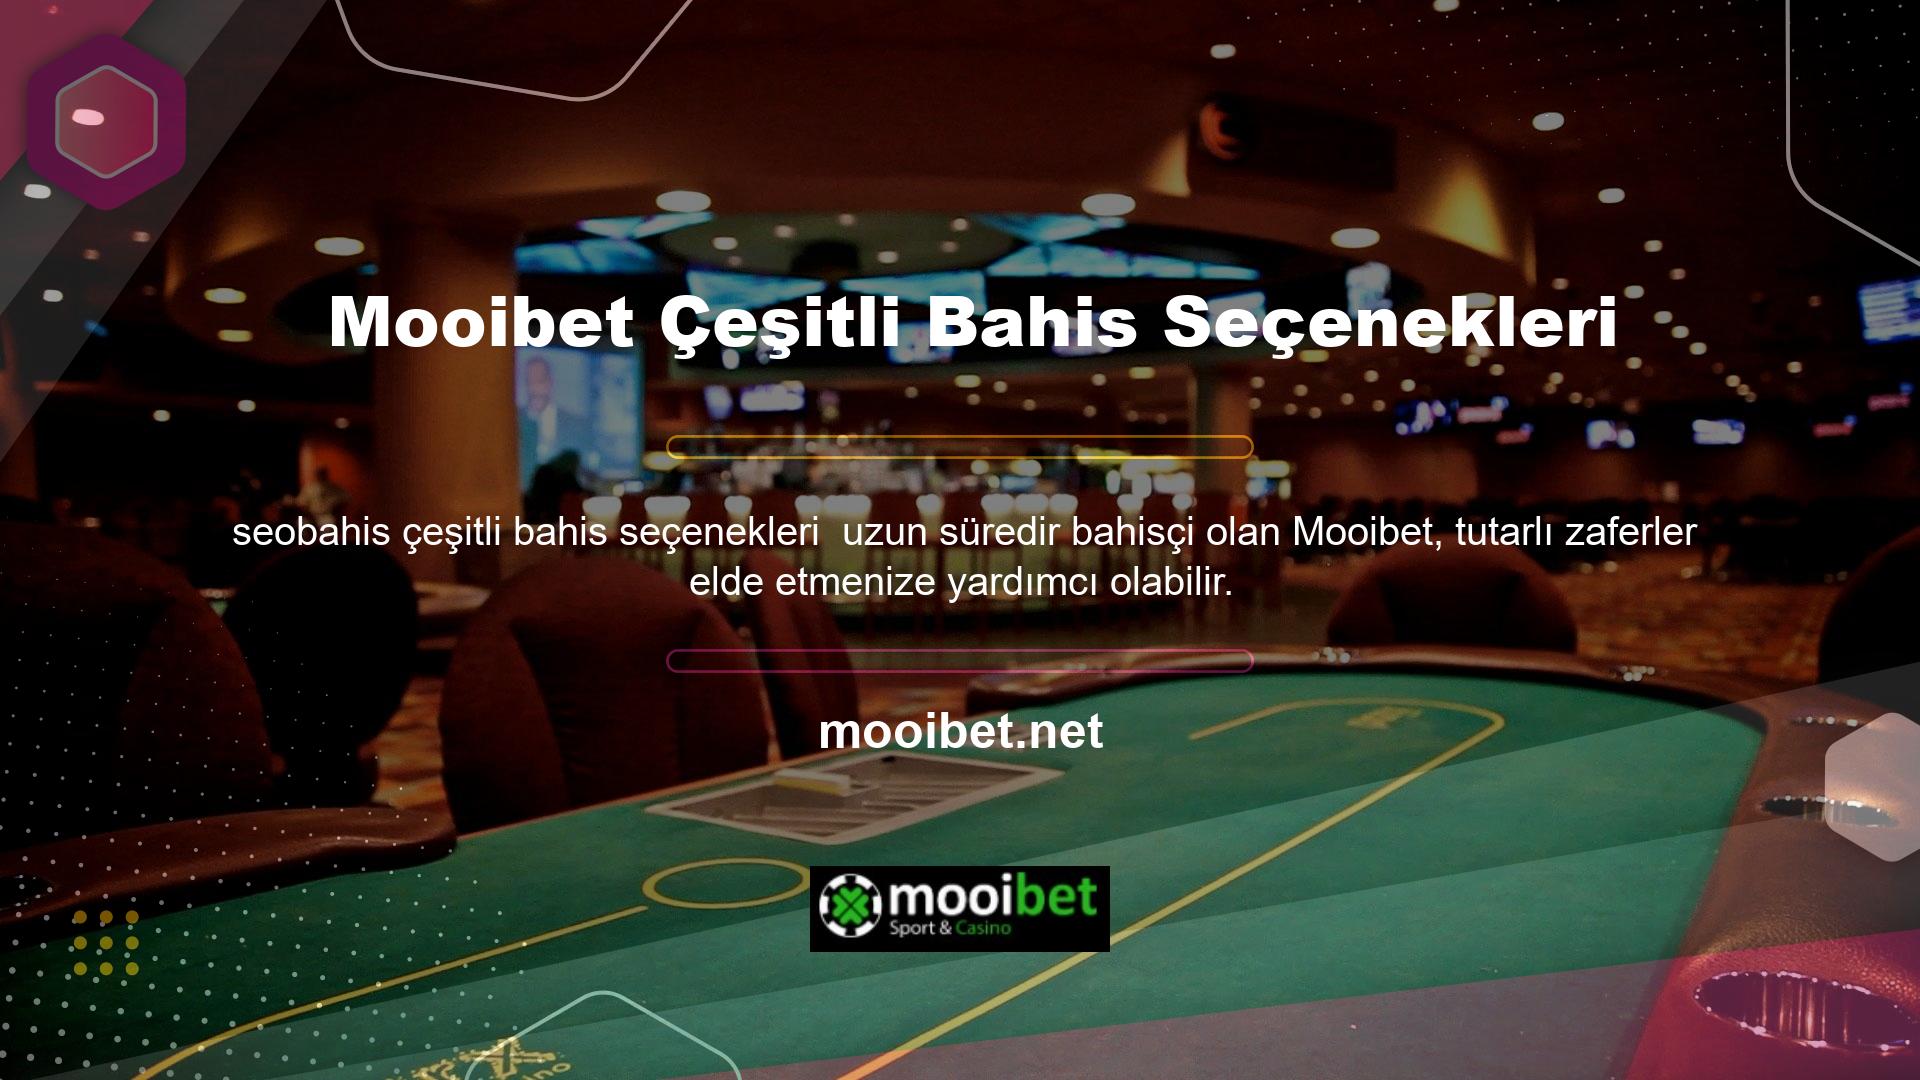 Ülkemizde önemli bir konuma sahip olan Mooibet, ödeme toplayan ve yüksek olasılıklı bahisler sunan, geniş bahis alternatifleri sunan, sorunsuz, yasa dışı bir casino sitesidir